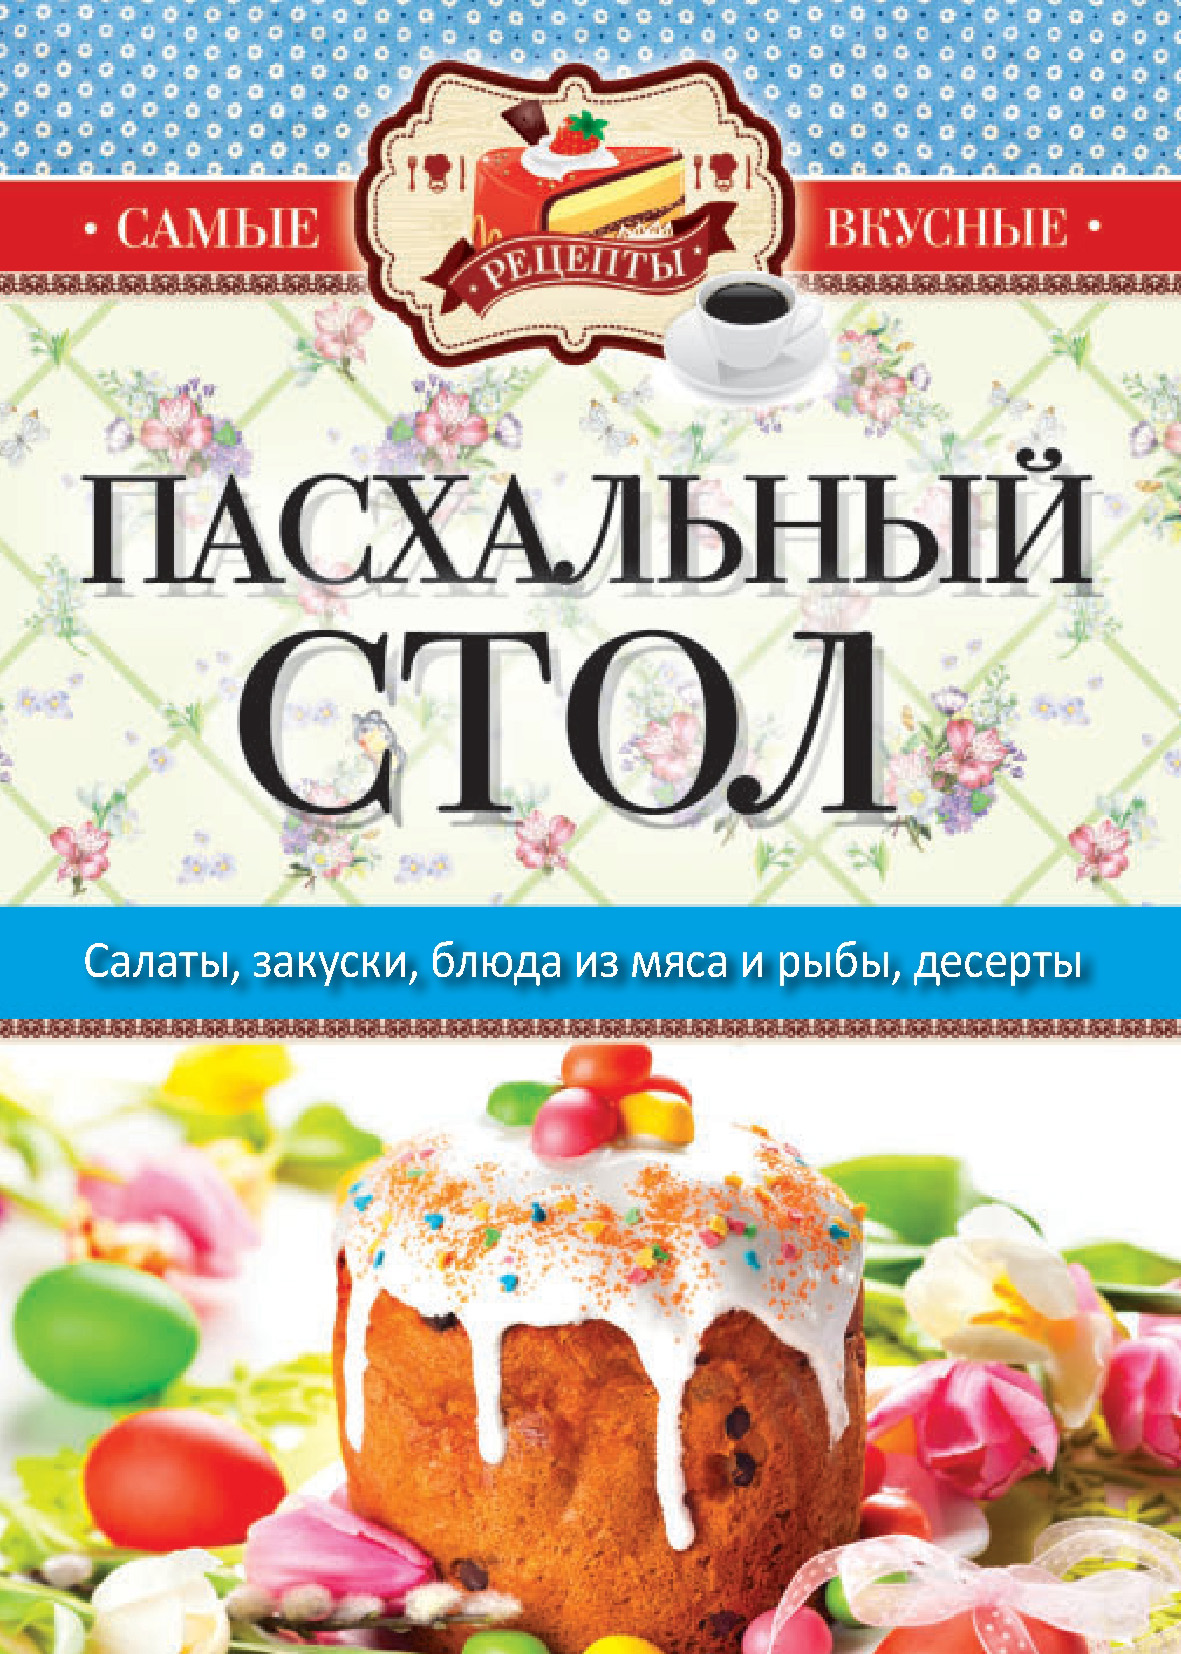 Книга Пасхальный стол из серии Самые вкусные рецепты, созданная Сергей Кашин, может относится к жанру Кулинария. Стоимость электронной книги Пасхальный стол с идентификатором 10358887 составляет 99.00 руб.